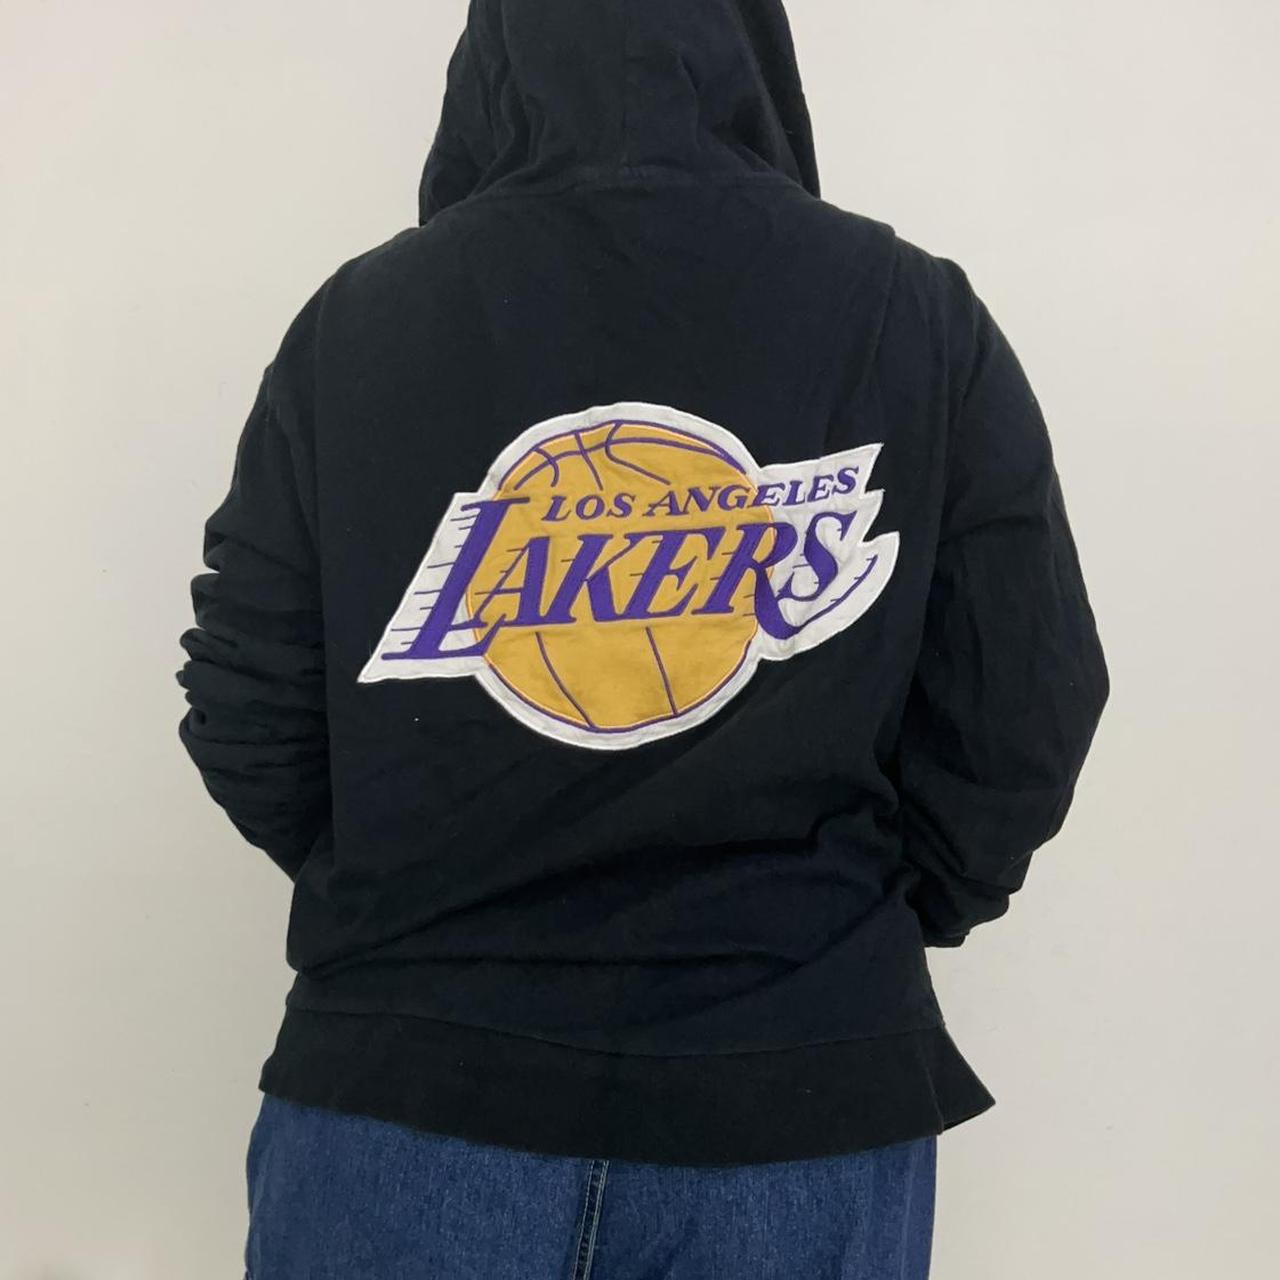 White LA Lakers hoodie with pink logo #LakersHoodie - Depop